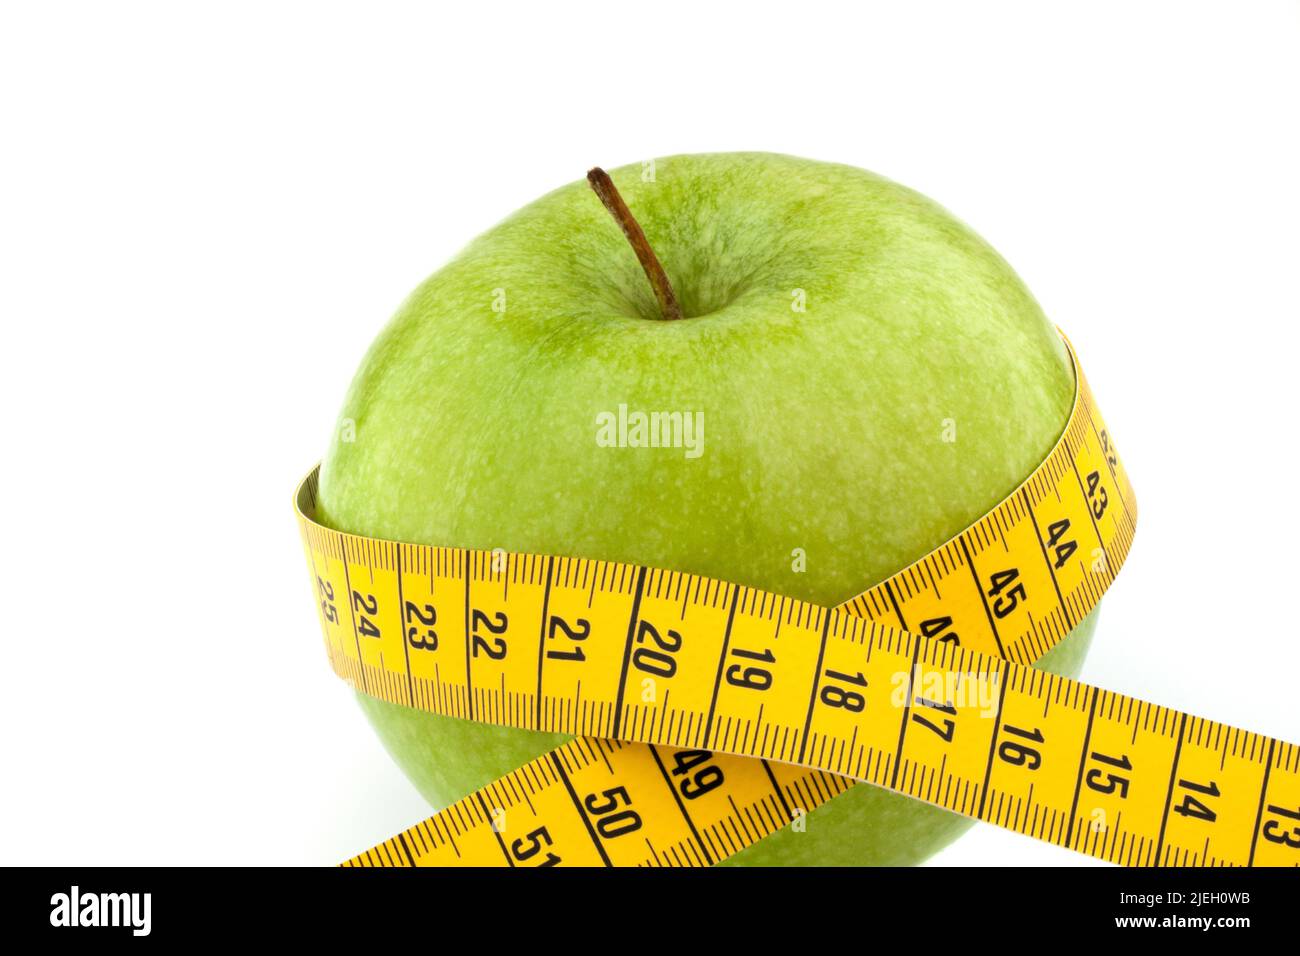 Eingrüner Apfel mit Massband. Symbol für Diät mit Obst. Stock Photo